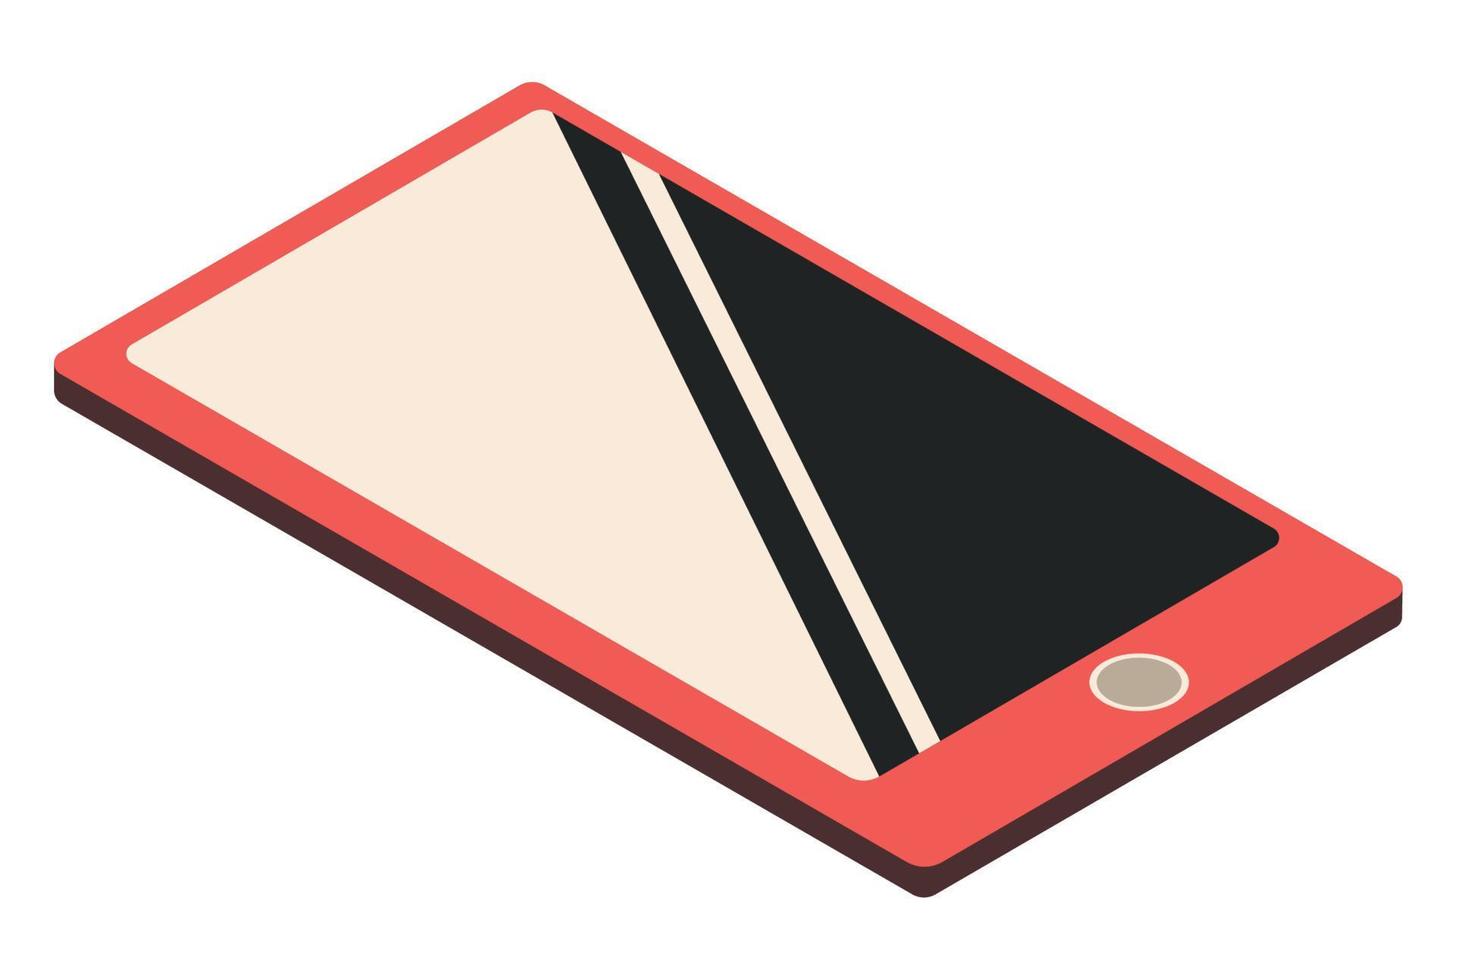 icône de périphérique smartphone vecteur